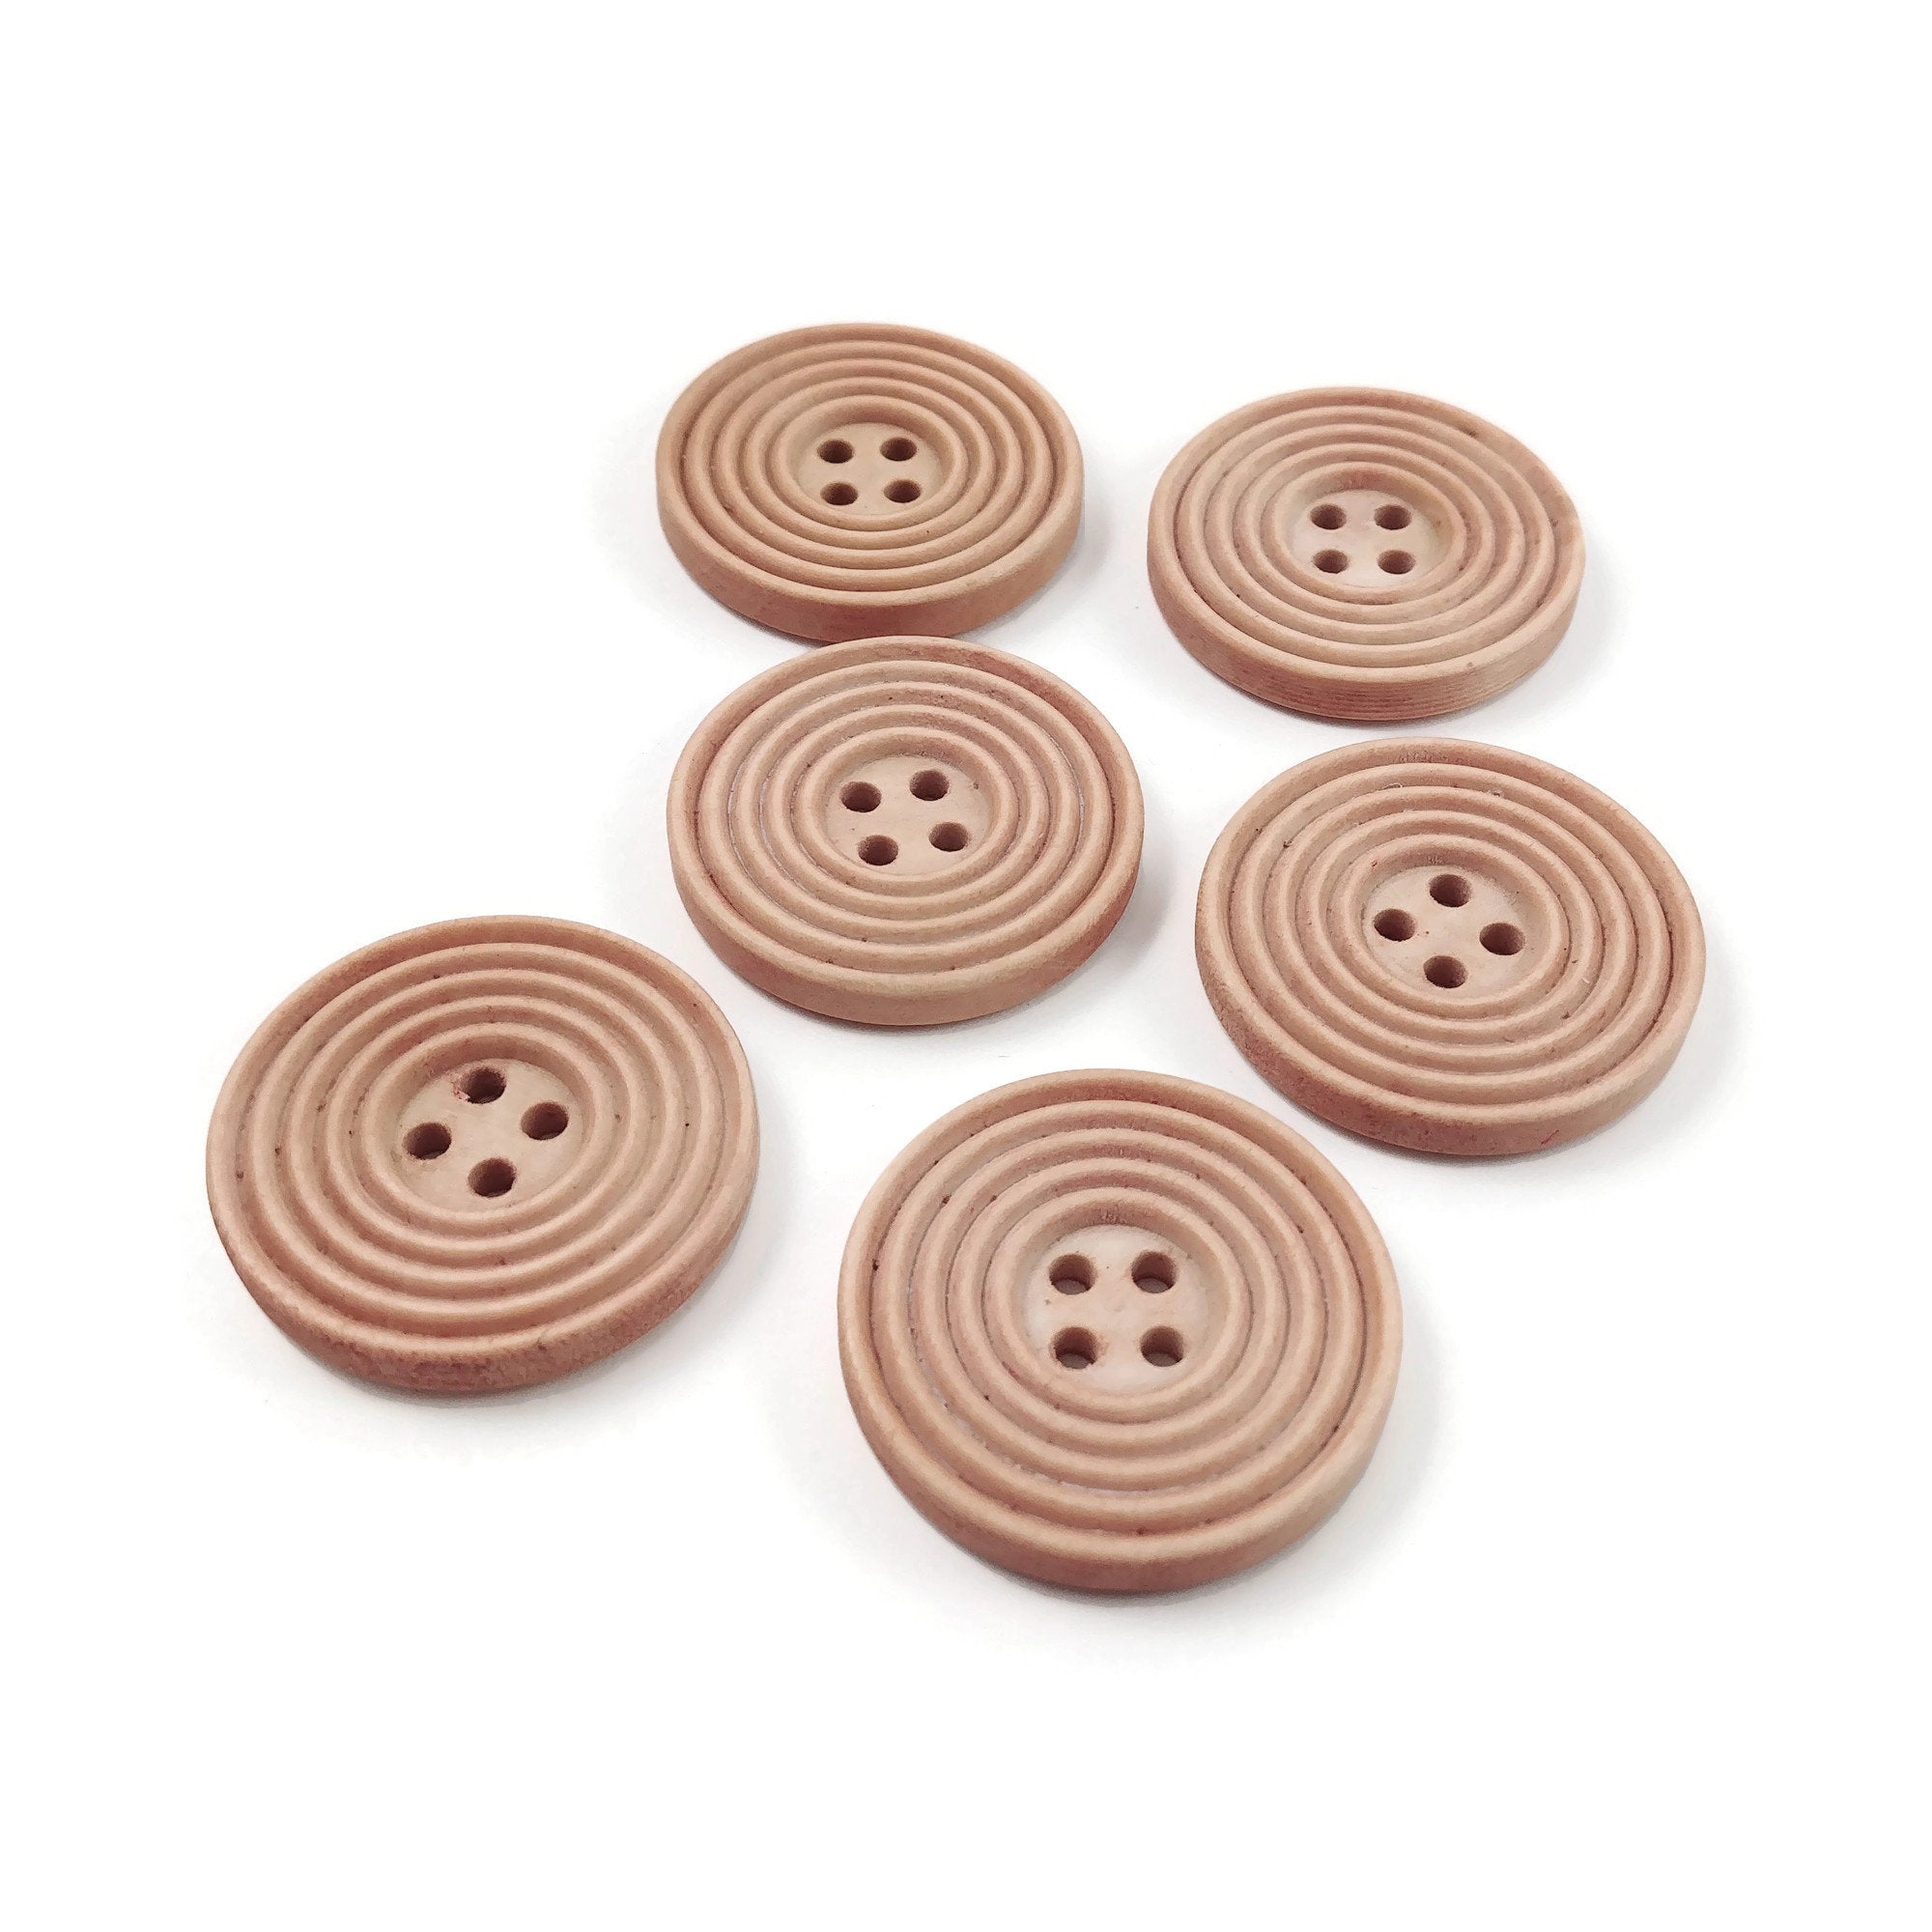 Bouton de bois de 3cm - ensemble de 6 boutons en bois rosé avec cercles